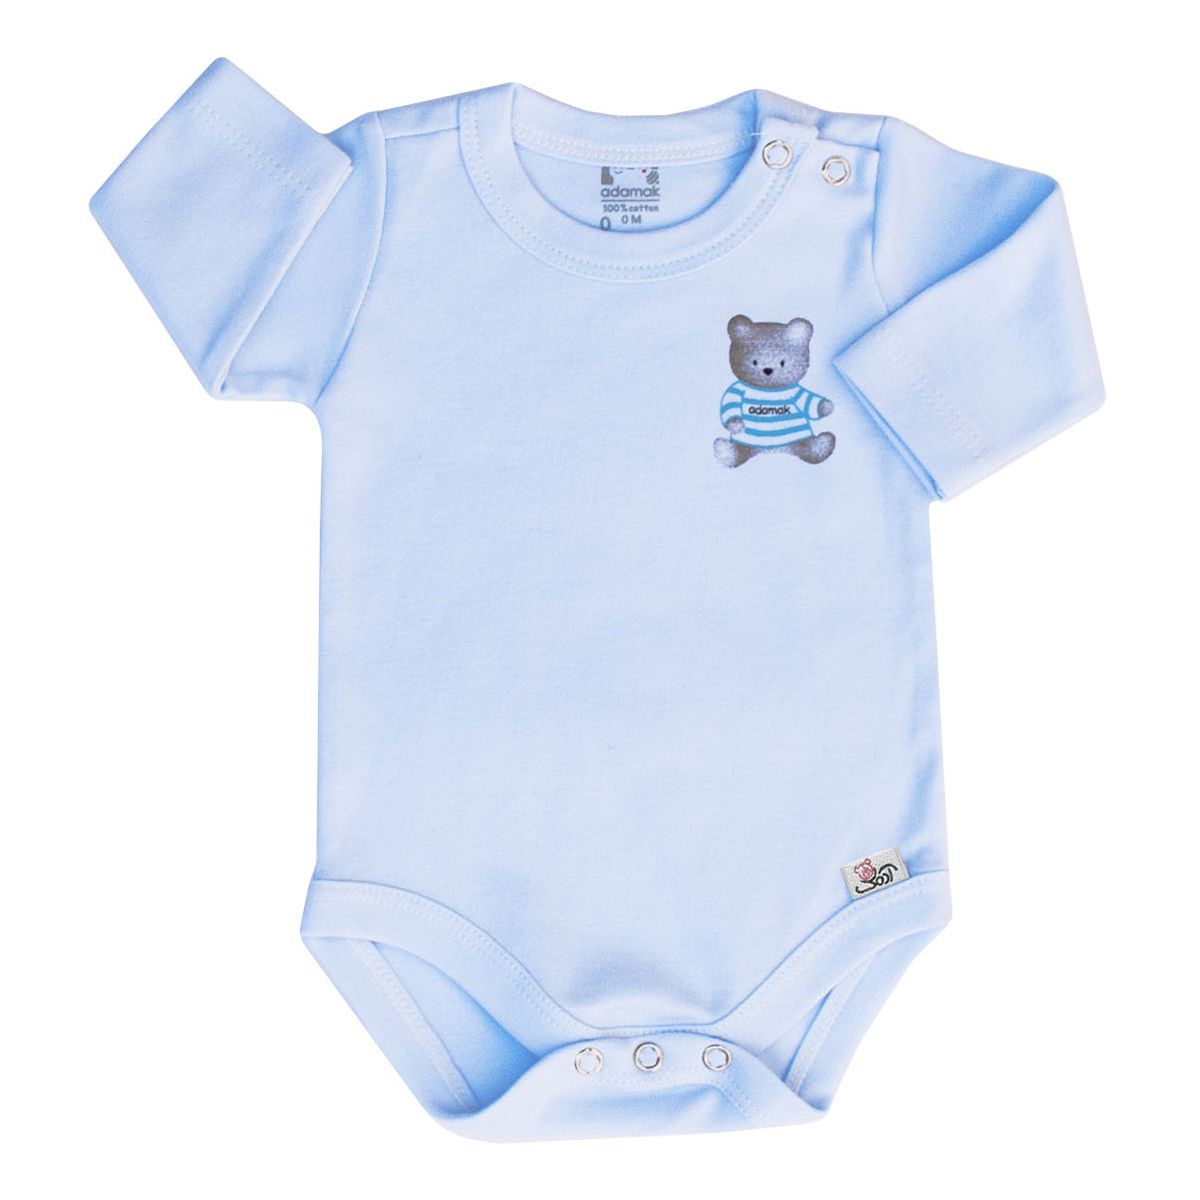 بادی آستین بلند نوزاد آدمک طرح خرس رنگ آبی -  - 1